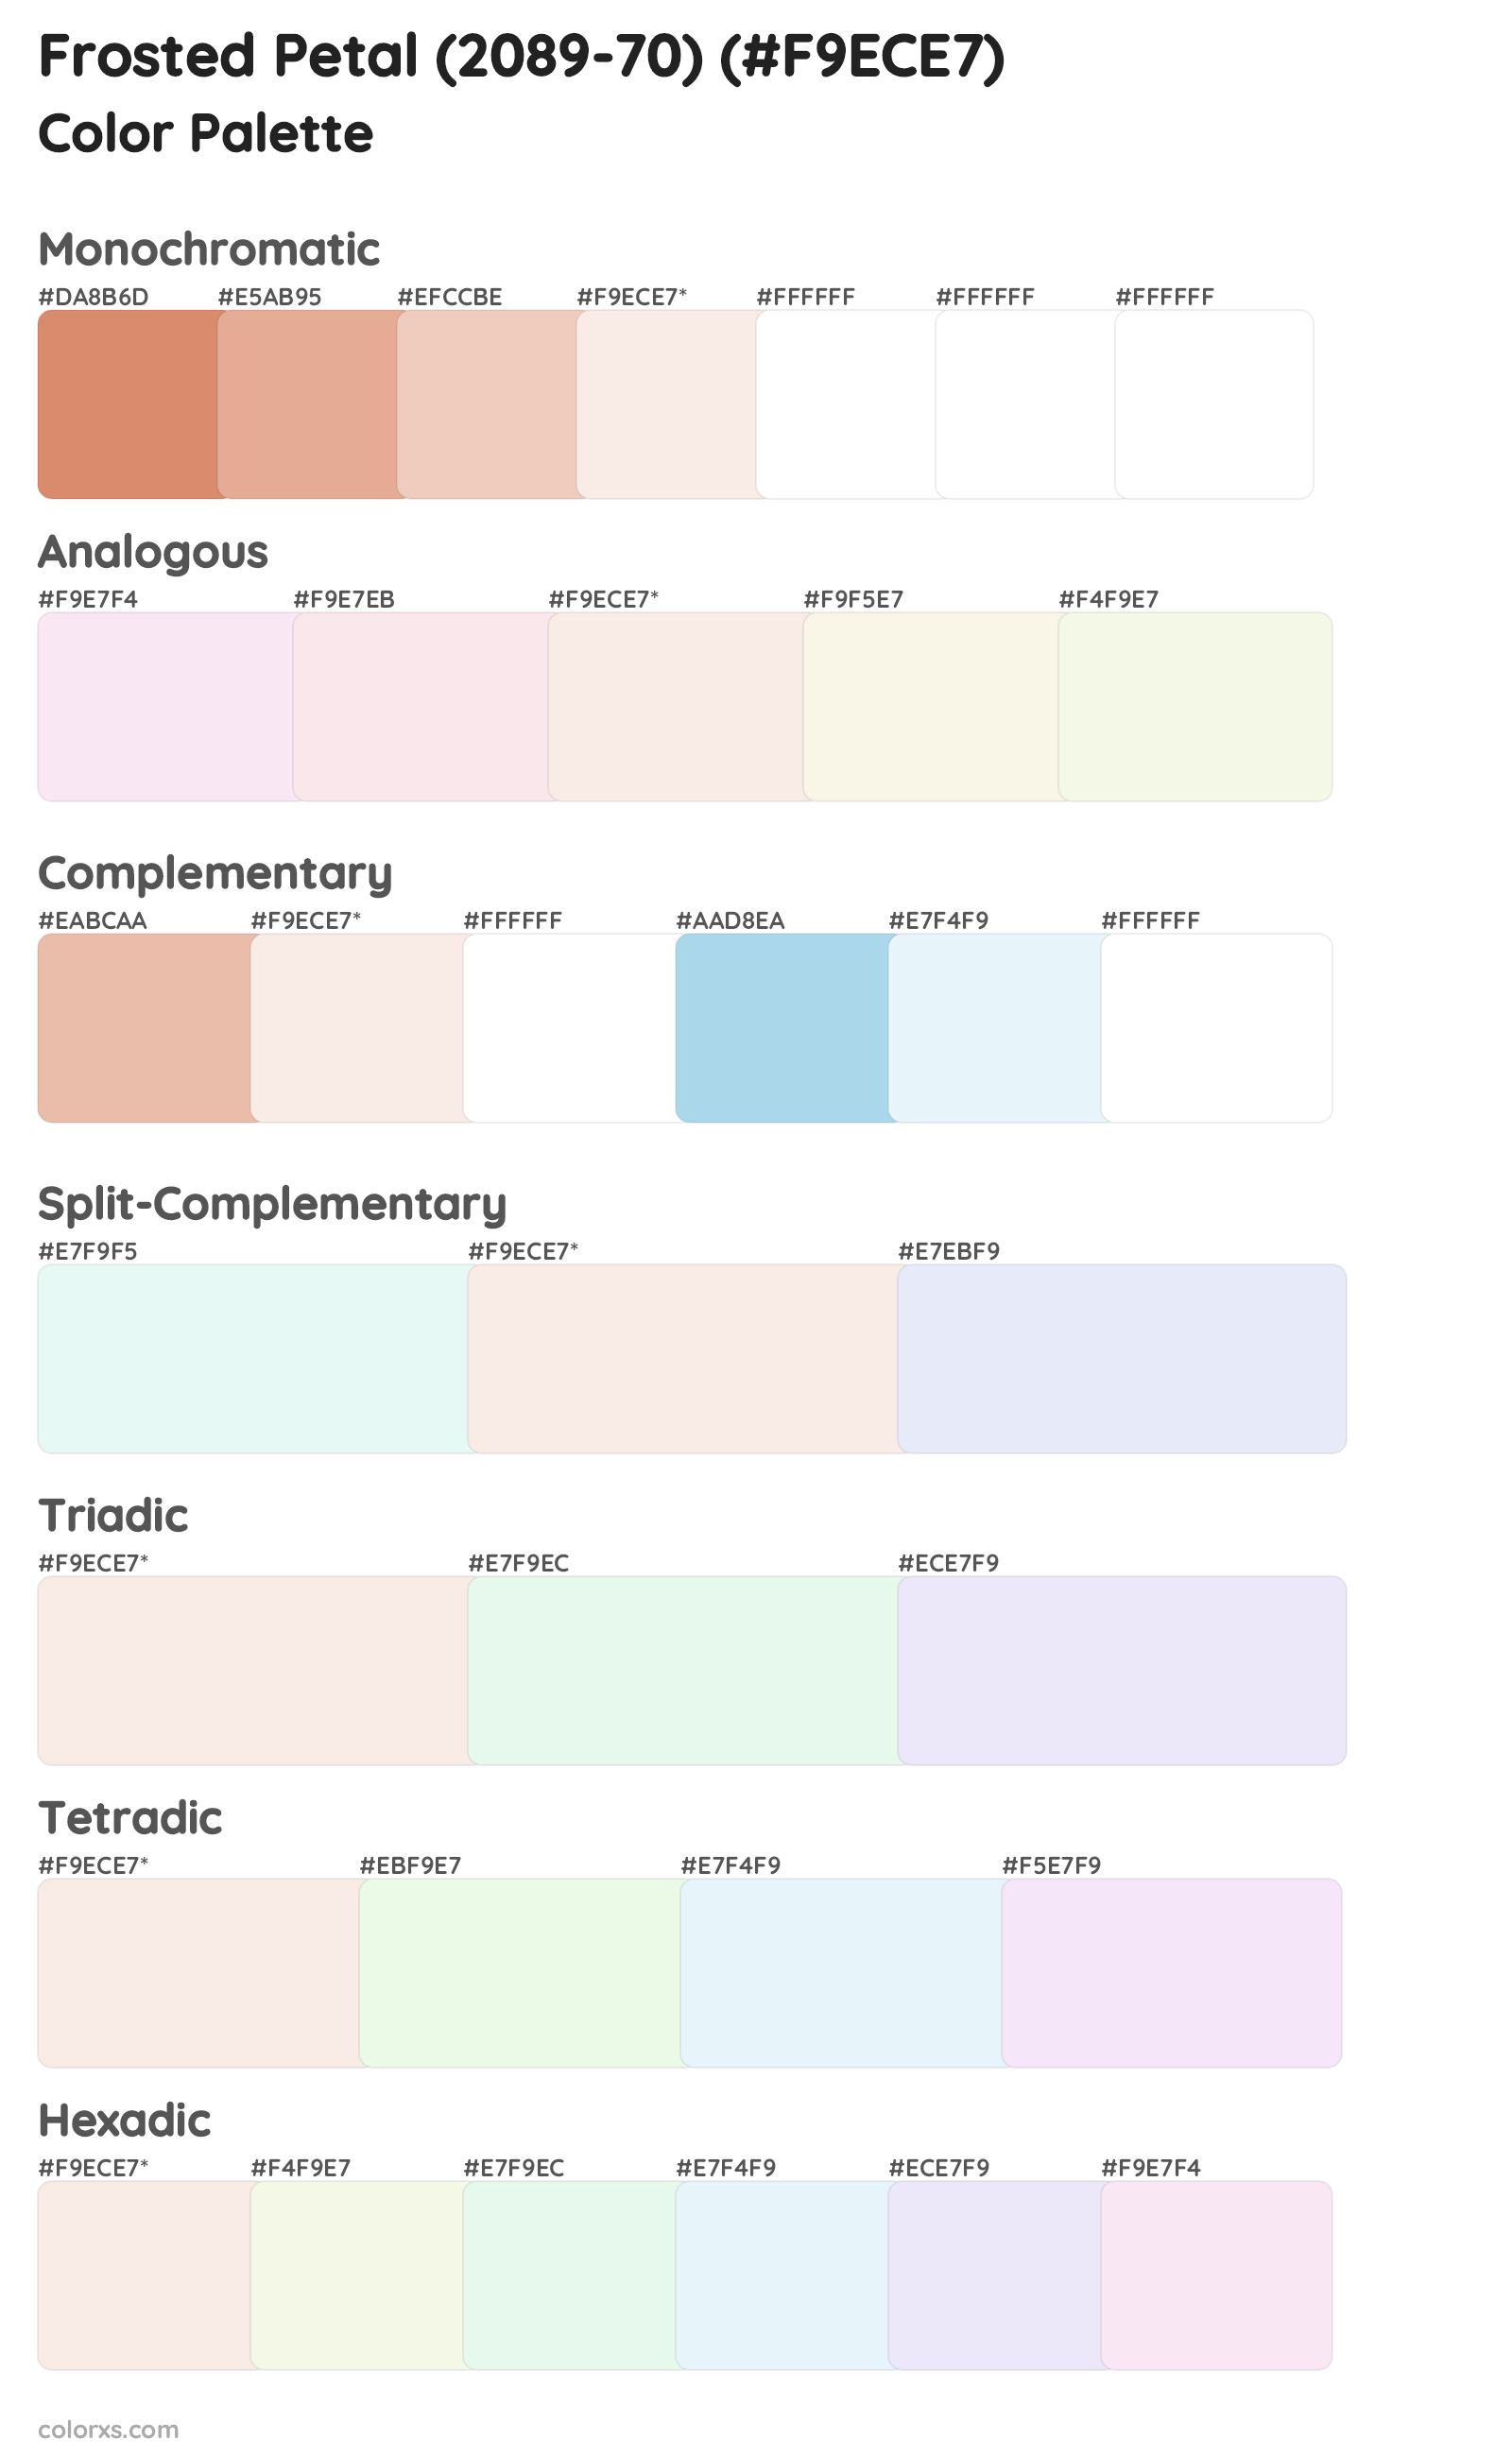 Frosted Petal (2089-70) Color Scheme Palettes